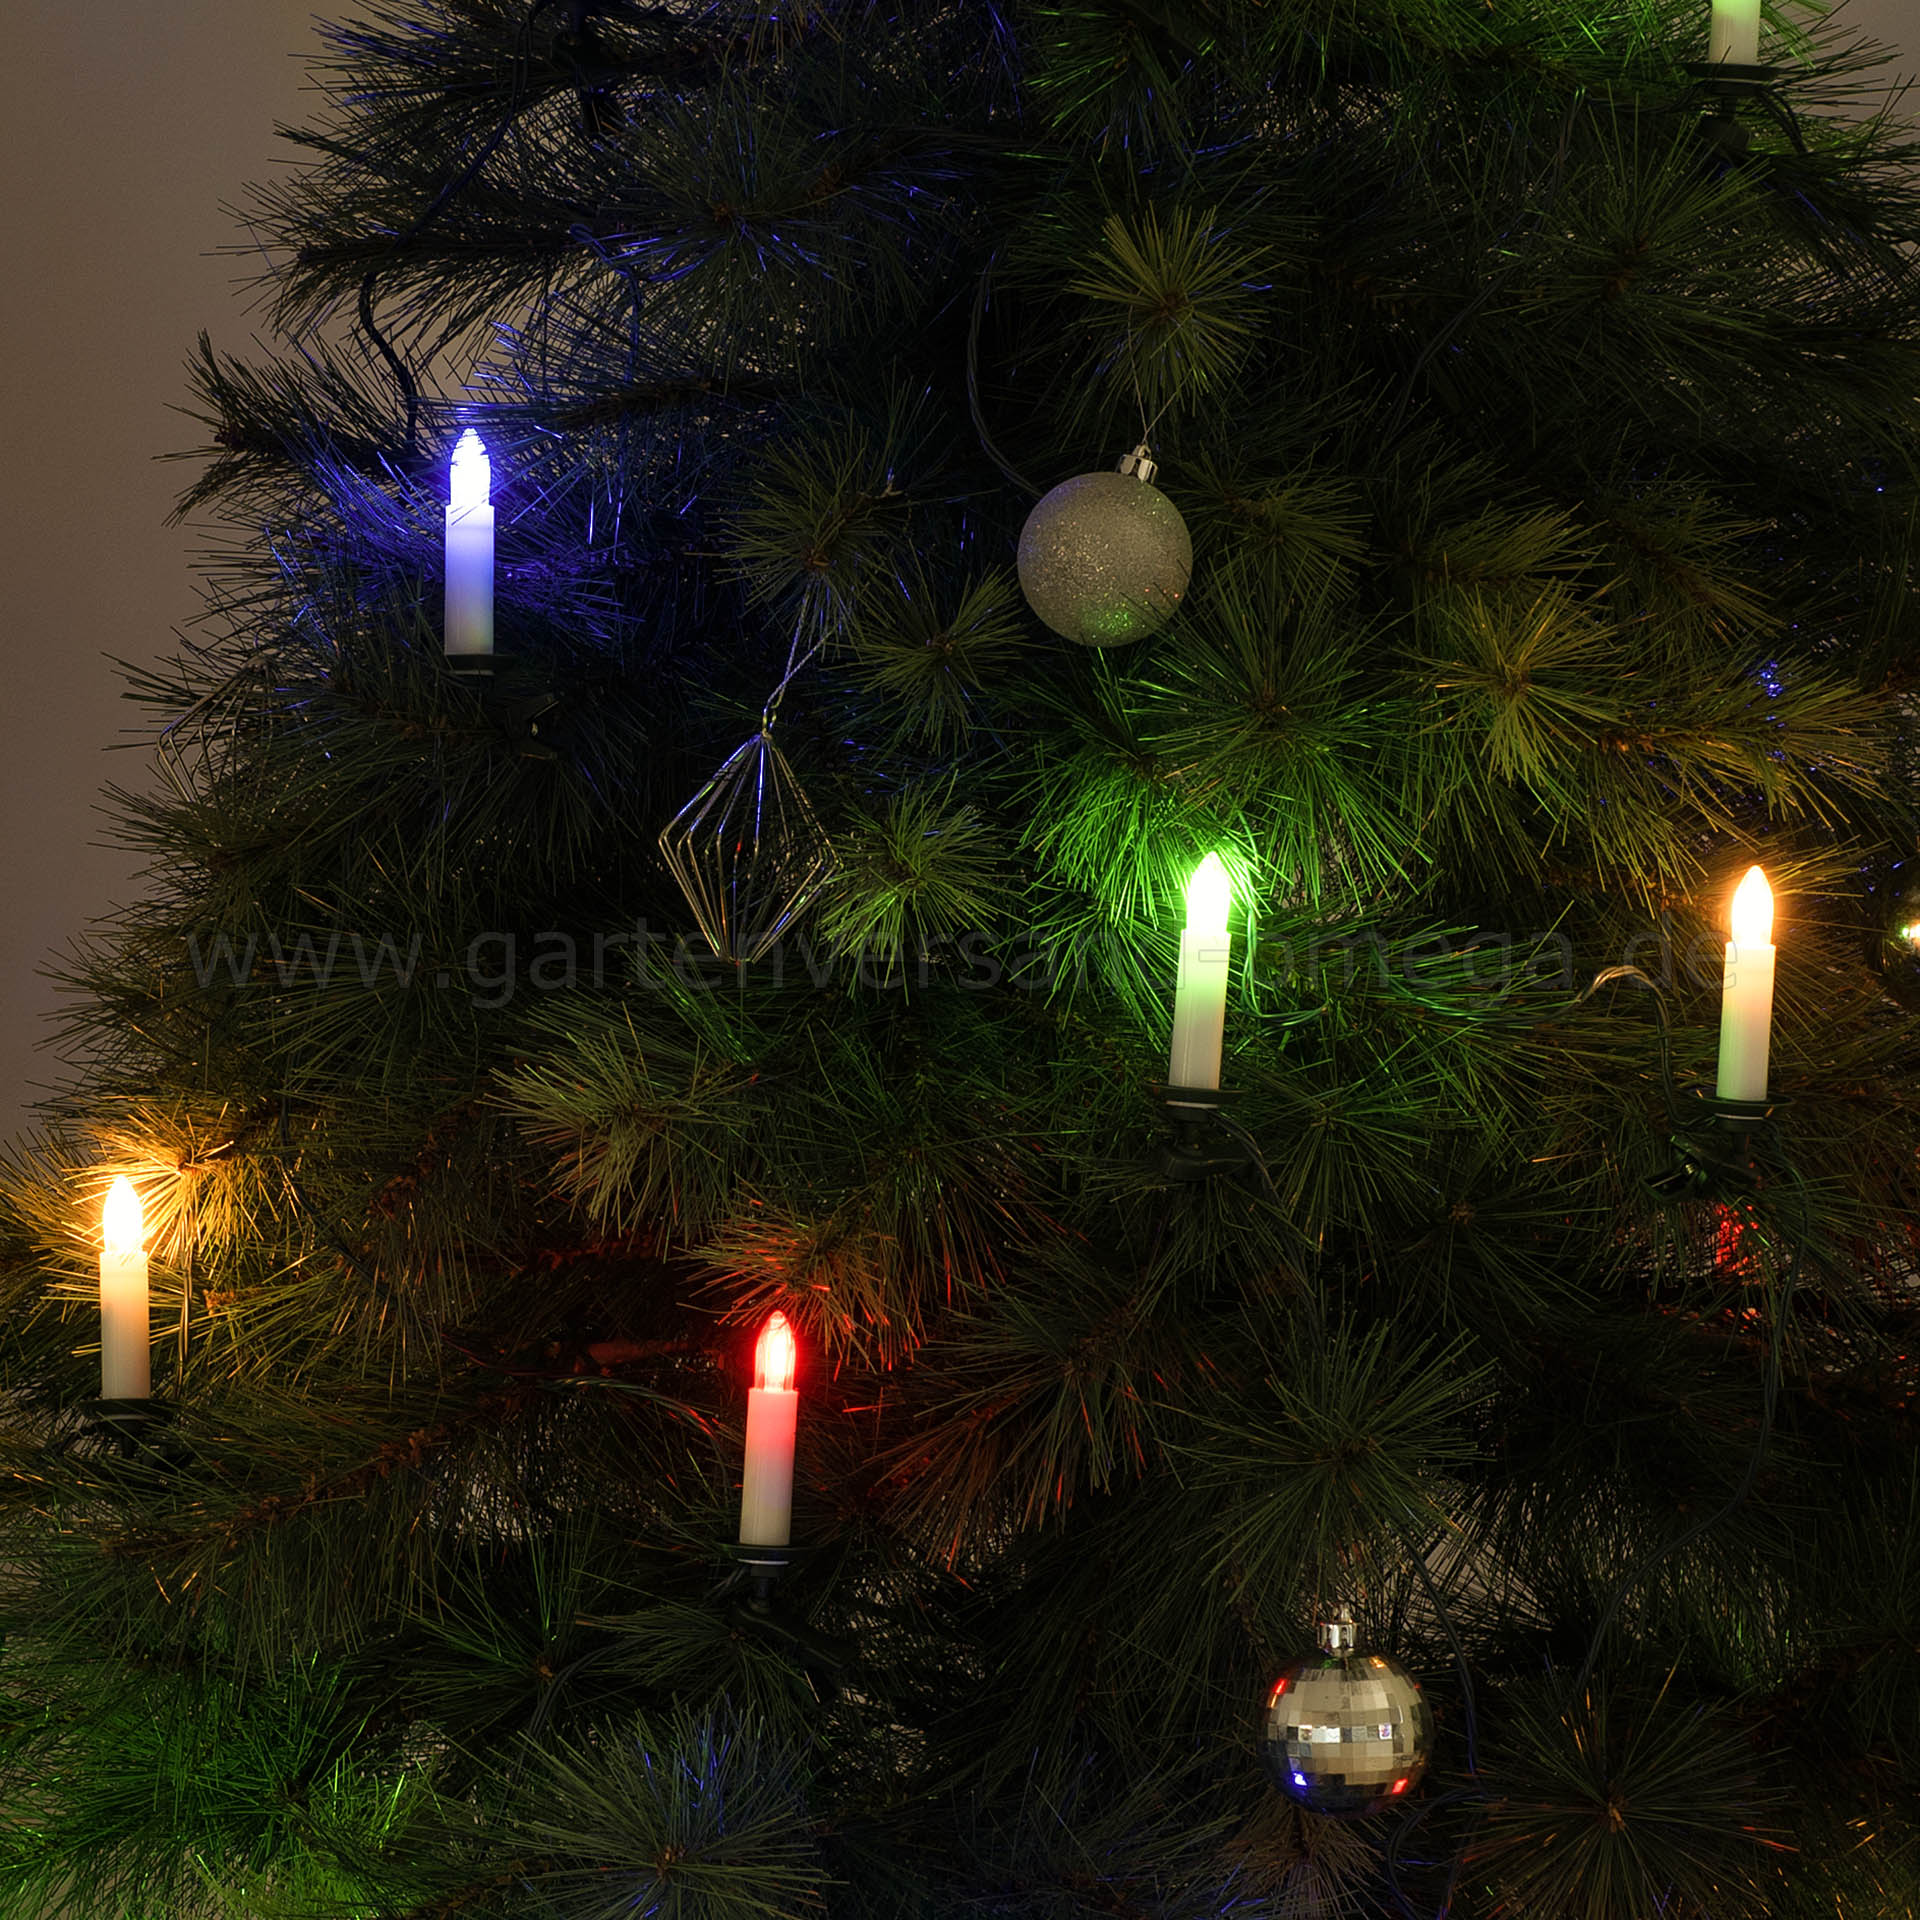 Baumlichterkette Kerze aussen Weihnachtsbaumbeleuchtung